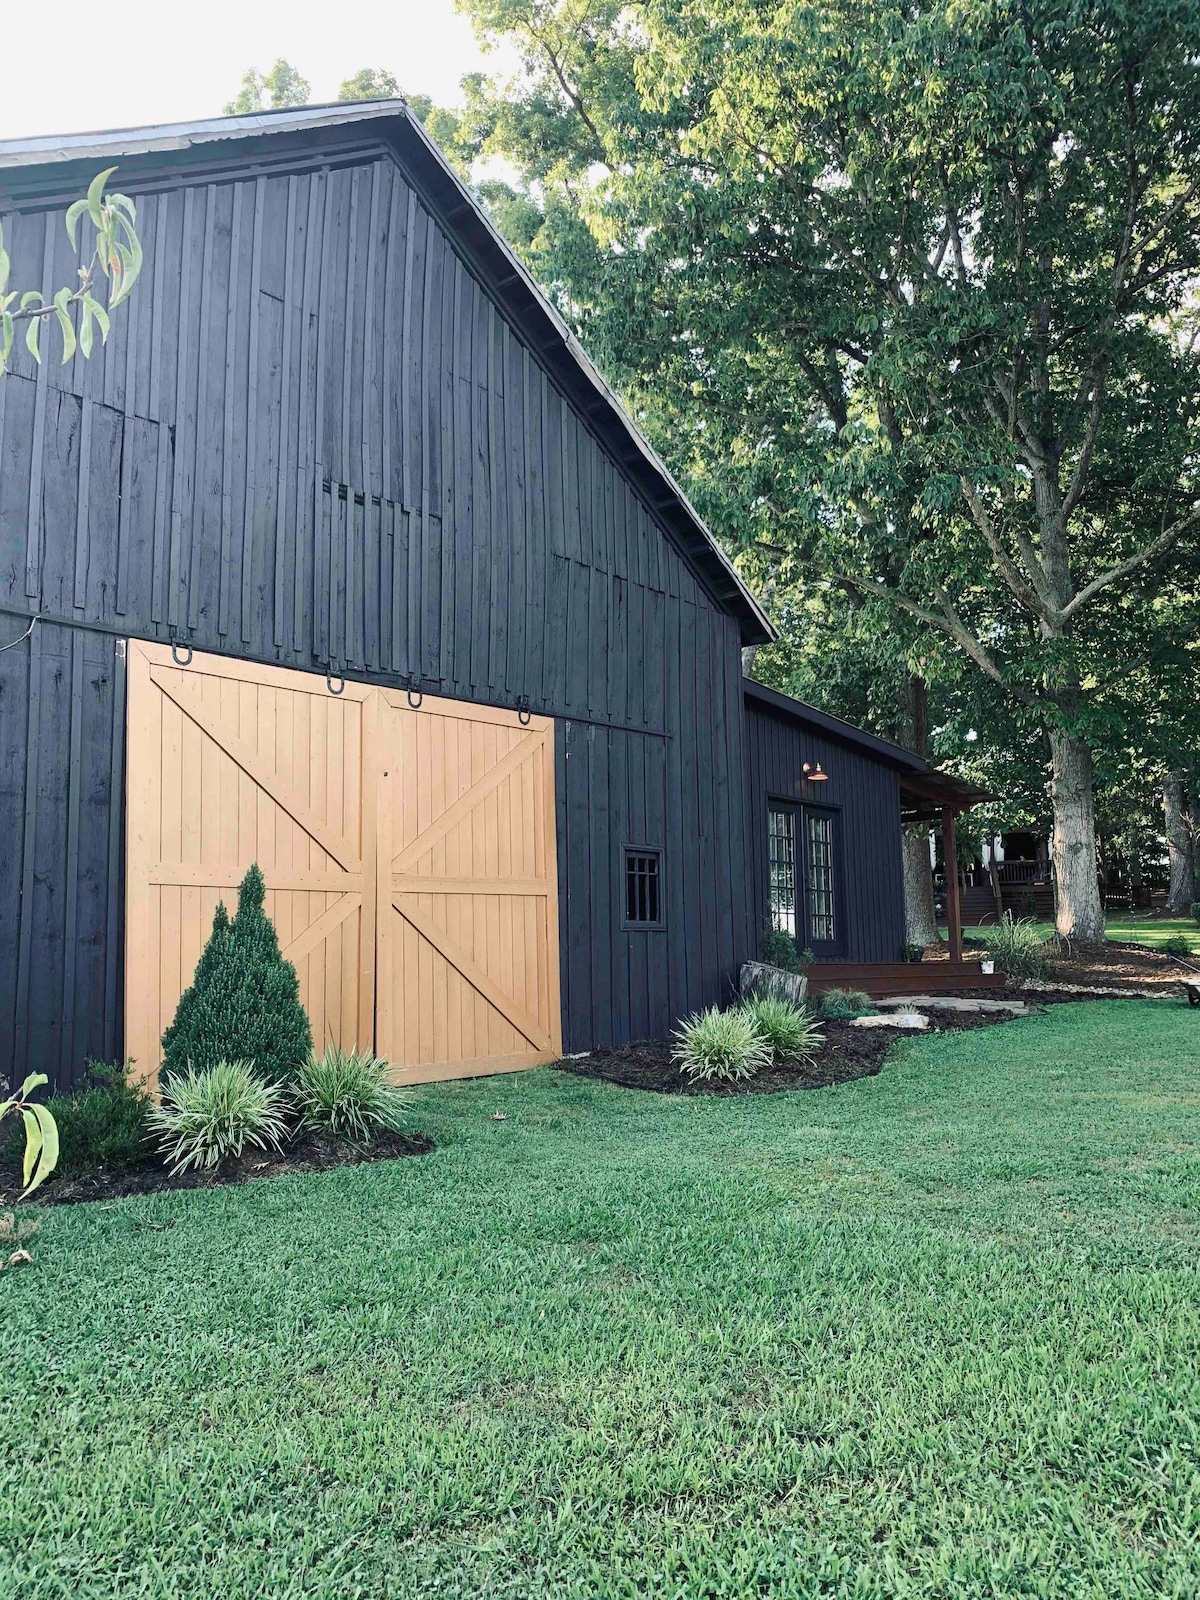 The FarmHouse Barn Suite